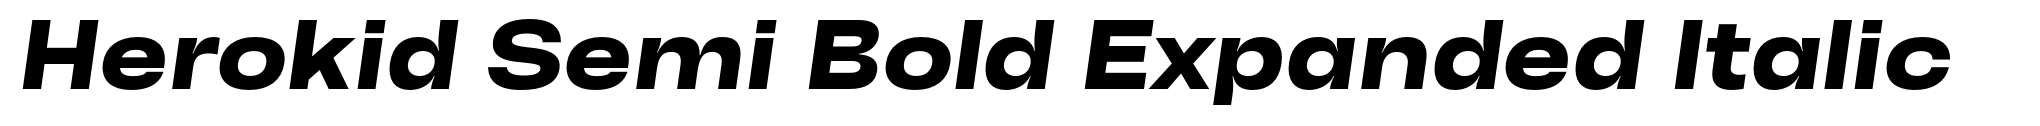 Herokid Semi Bold Expanded Italic image